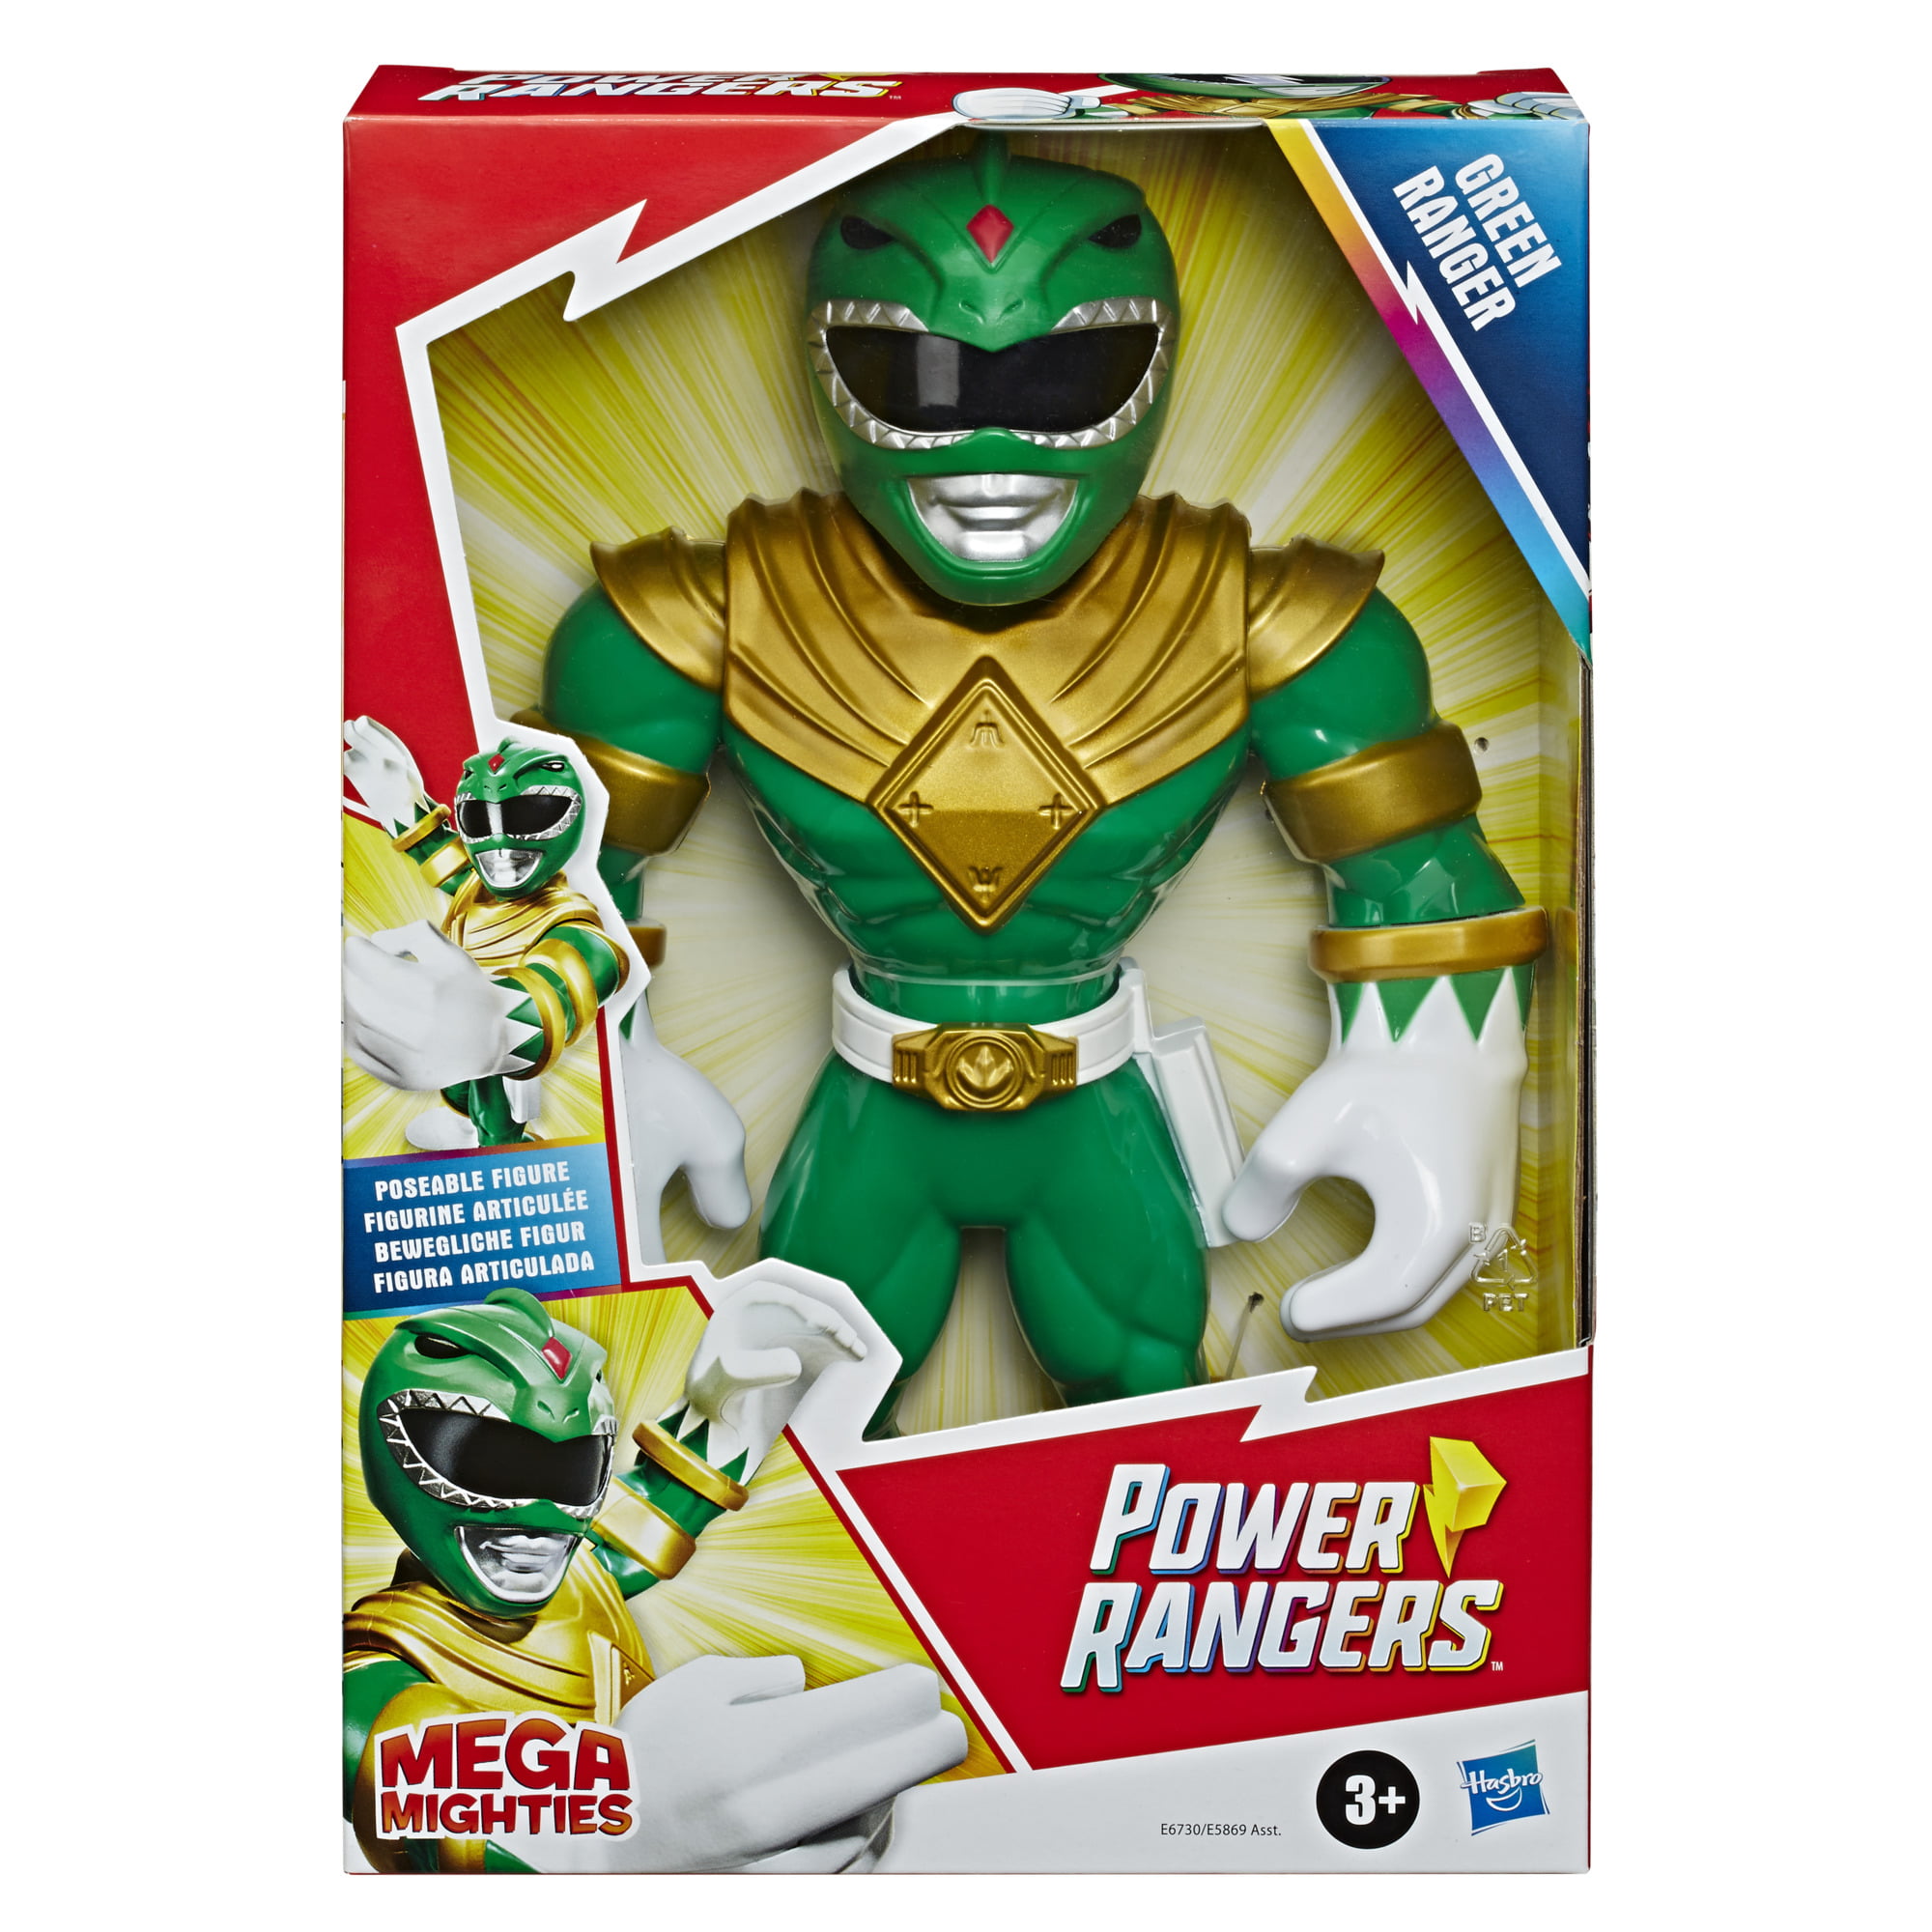 Playskool Heroes Mega mighties POWER RANGERS Red Ranger 10-inch Figure 